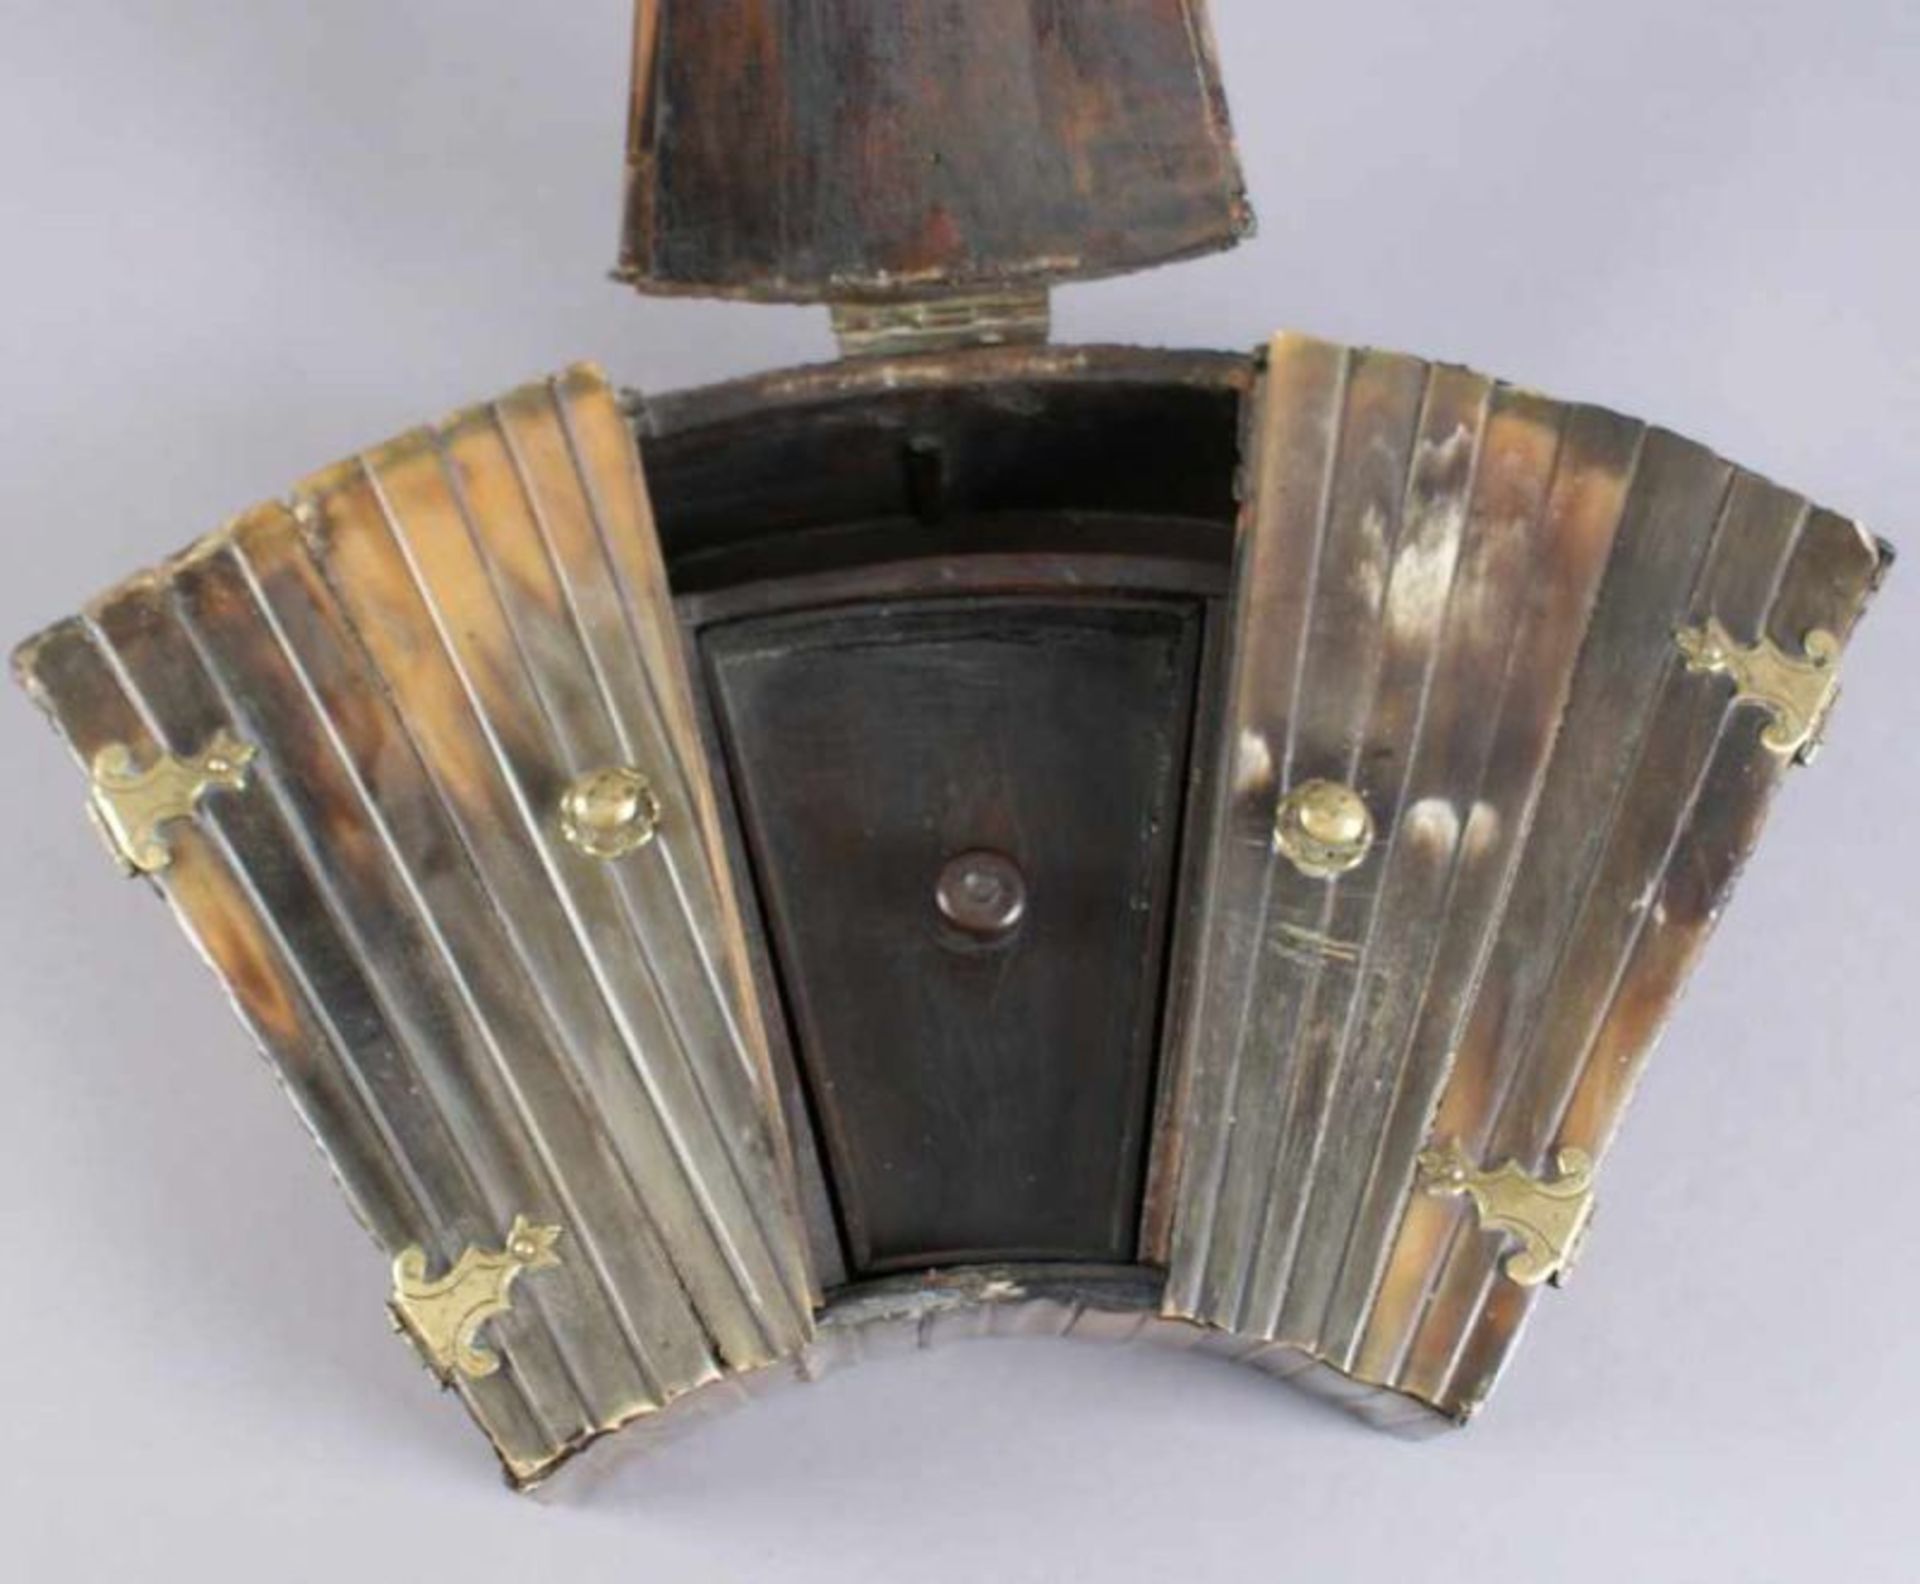 Fächerförmige Schatulle, Holzkorpus mit Walrossknochen besetzt, 17. JH, 6x33x18 cm 20.17 % buyer's - Bild 4 aus 8